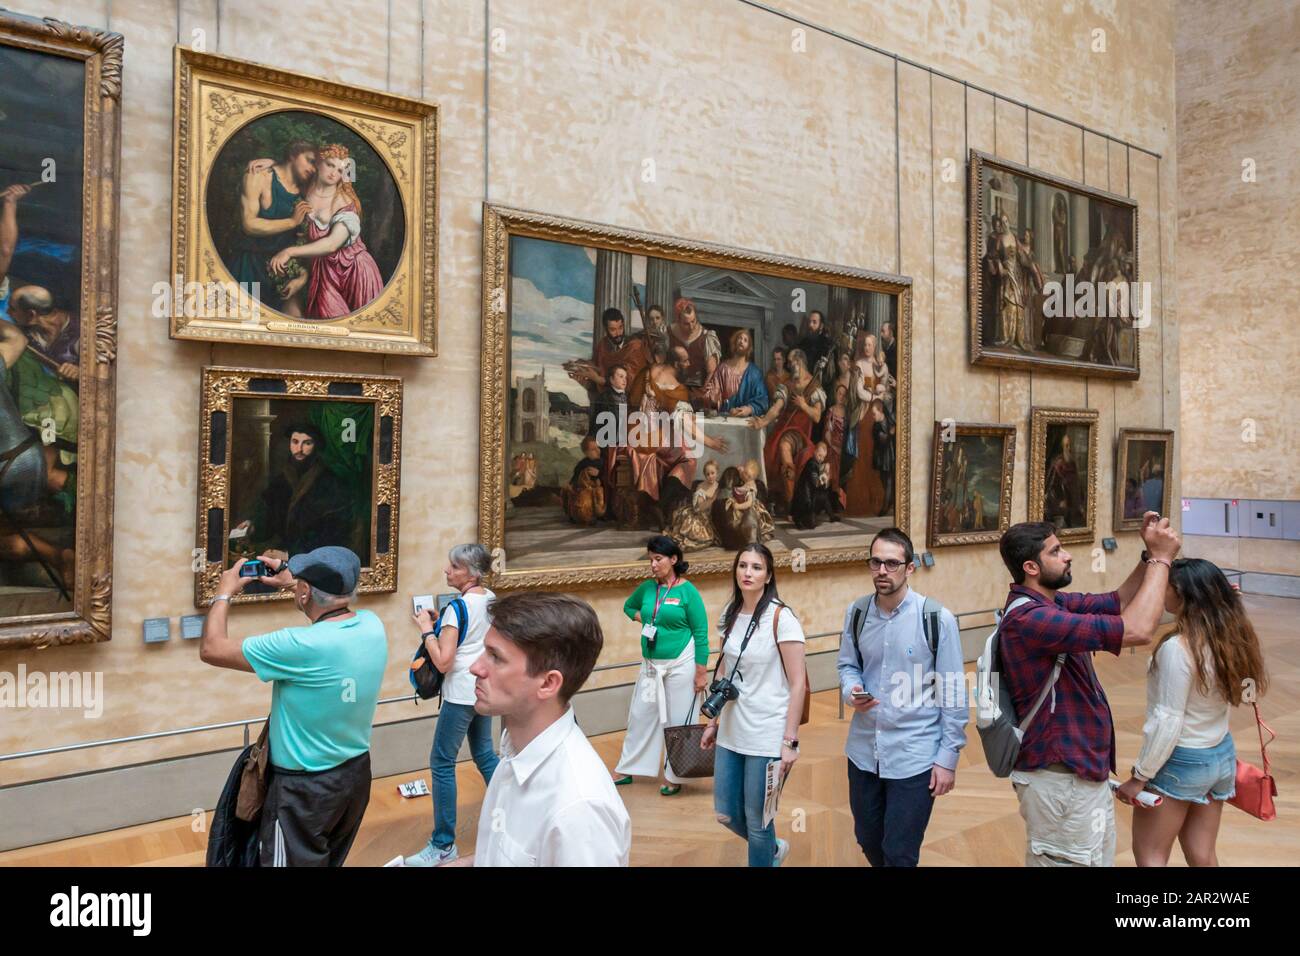 Louvre Museum Gemalde Stockfotos Und Bilder Kaufen Alamy